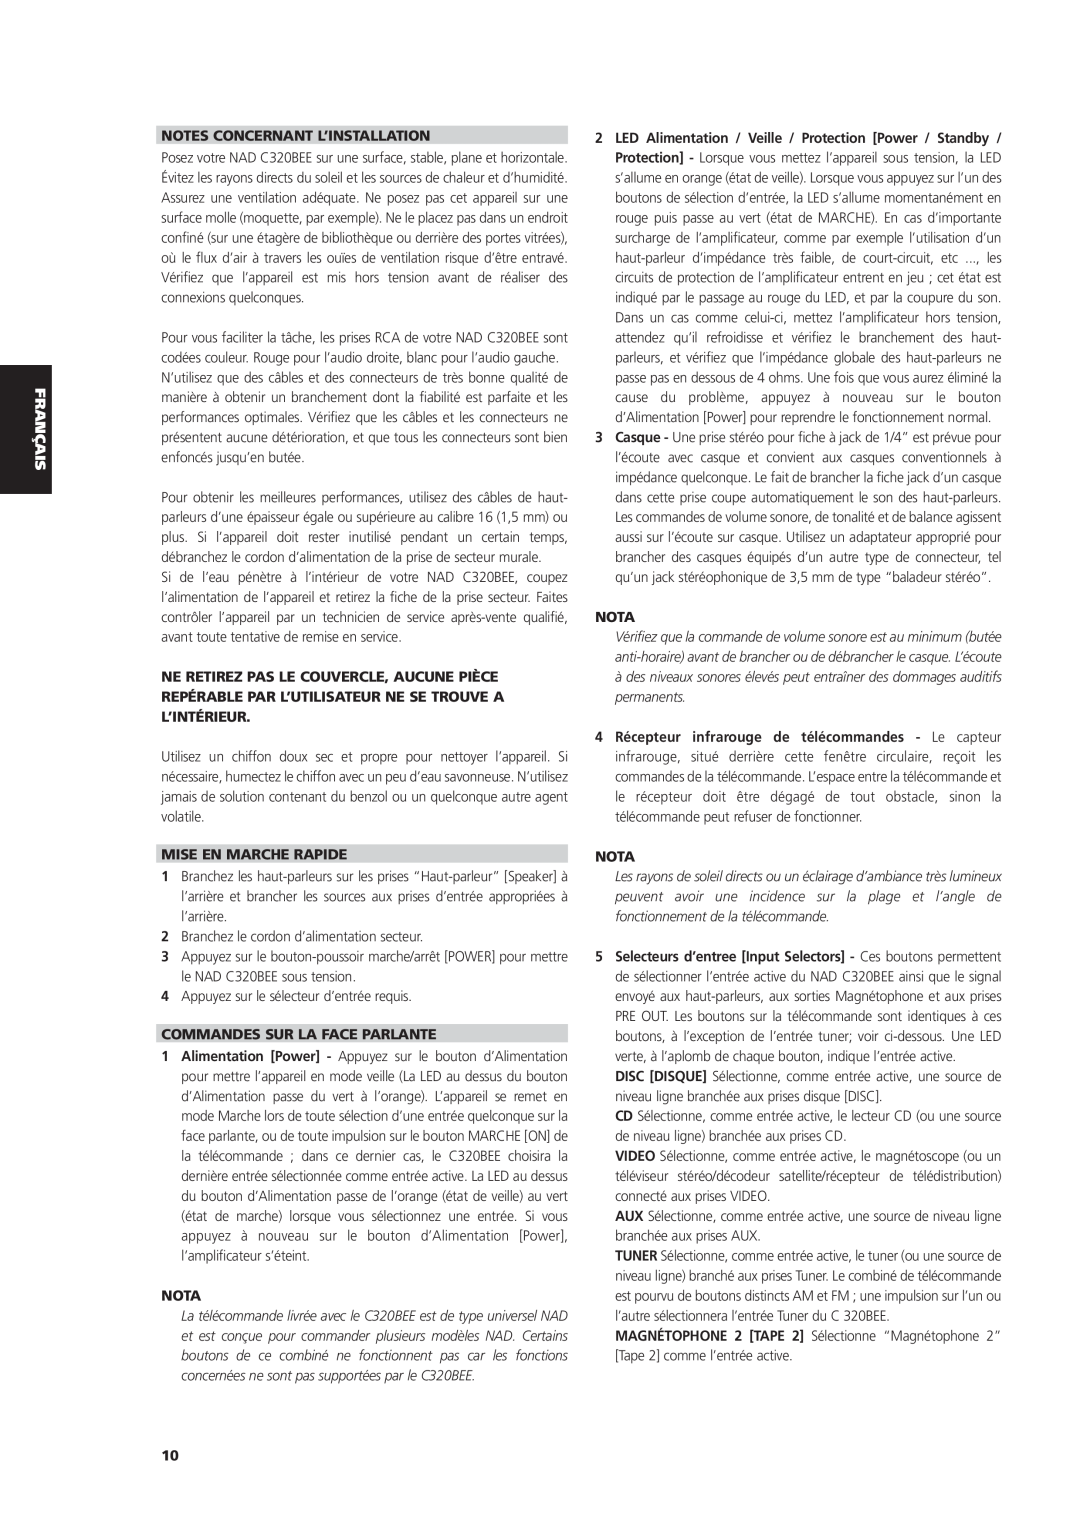 NAD C 320BEE owner manual Notes Concernant L’Installation, Mise En Marche Rapide, Commandes Sur La Face Parlante, Nota 